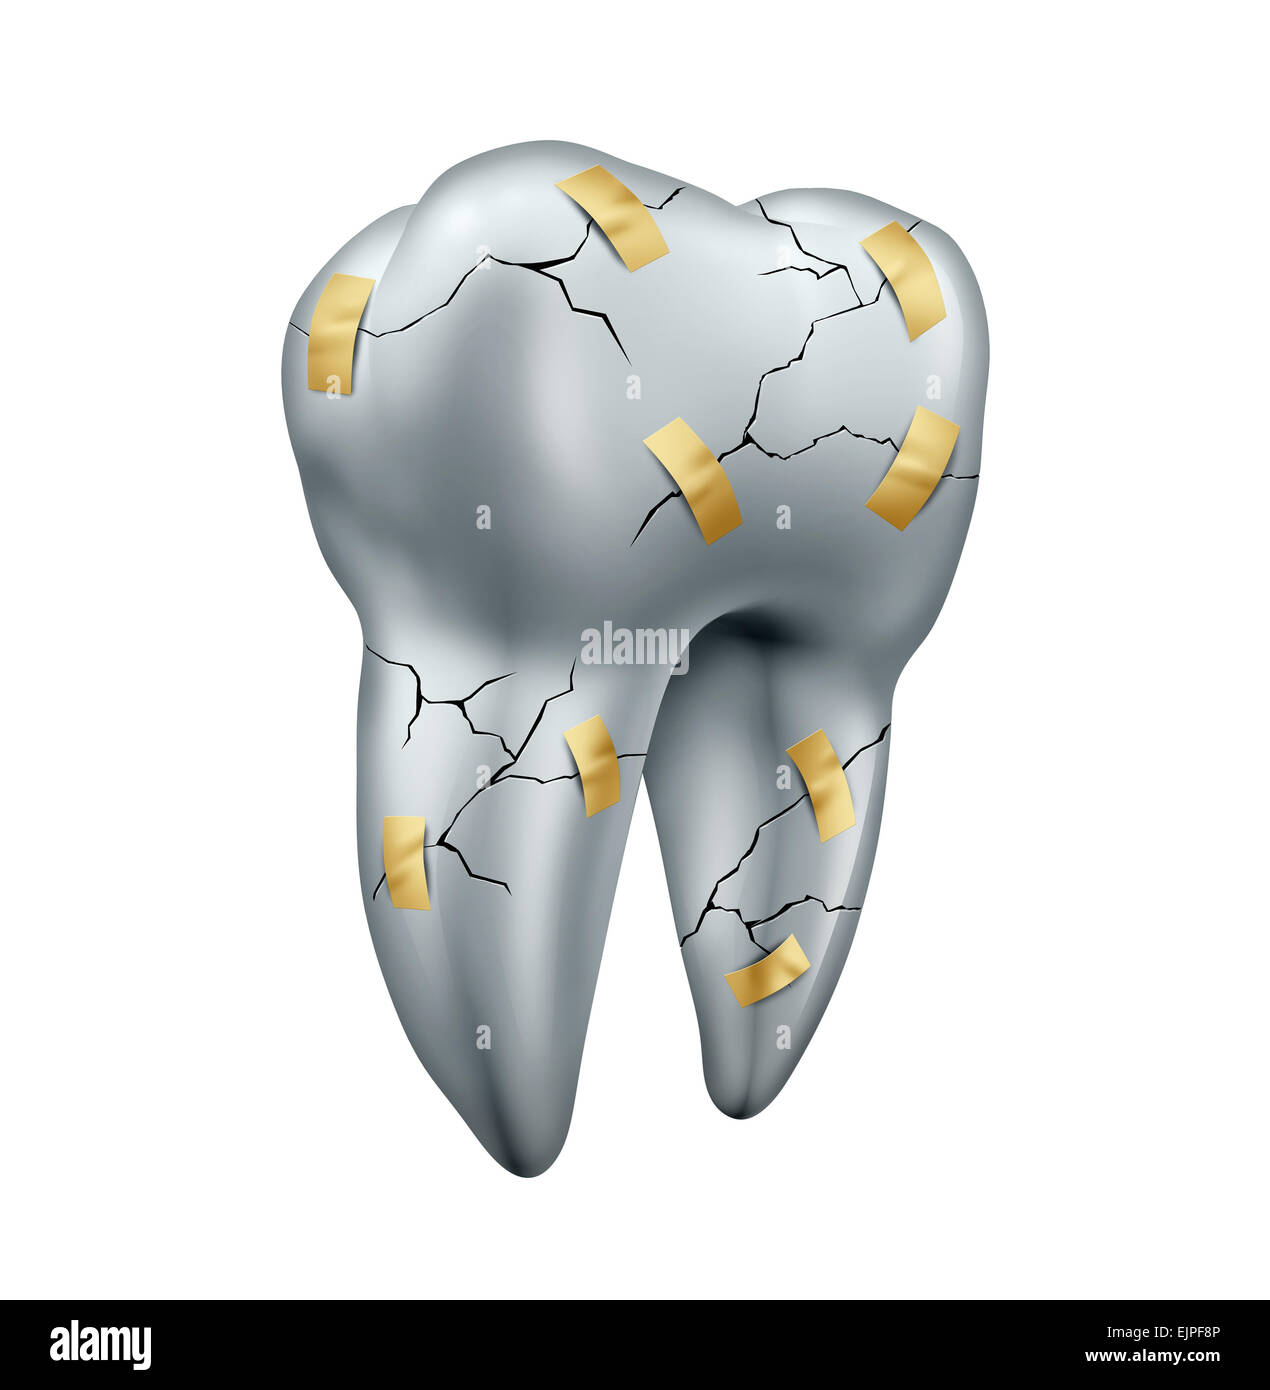 Réparation de dent dental concept comme un symbole de la santé pour la chirurgie dentiste ou de la fixation ou de la réparation des dents endommagées en raison de la pourriture ou cav Banque D'Images